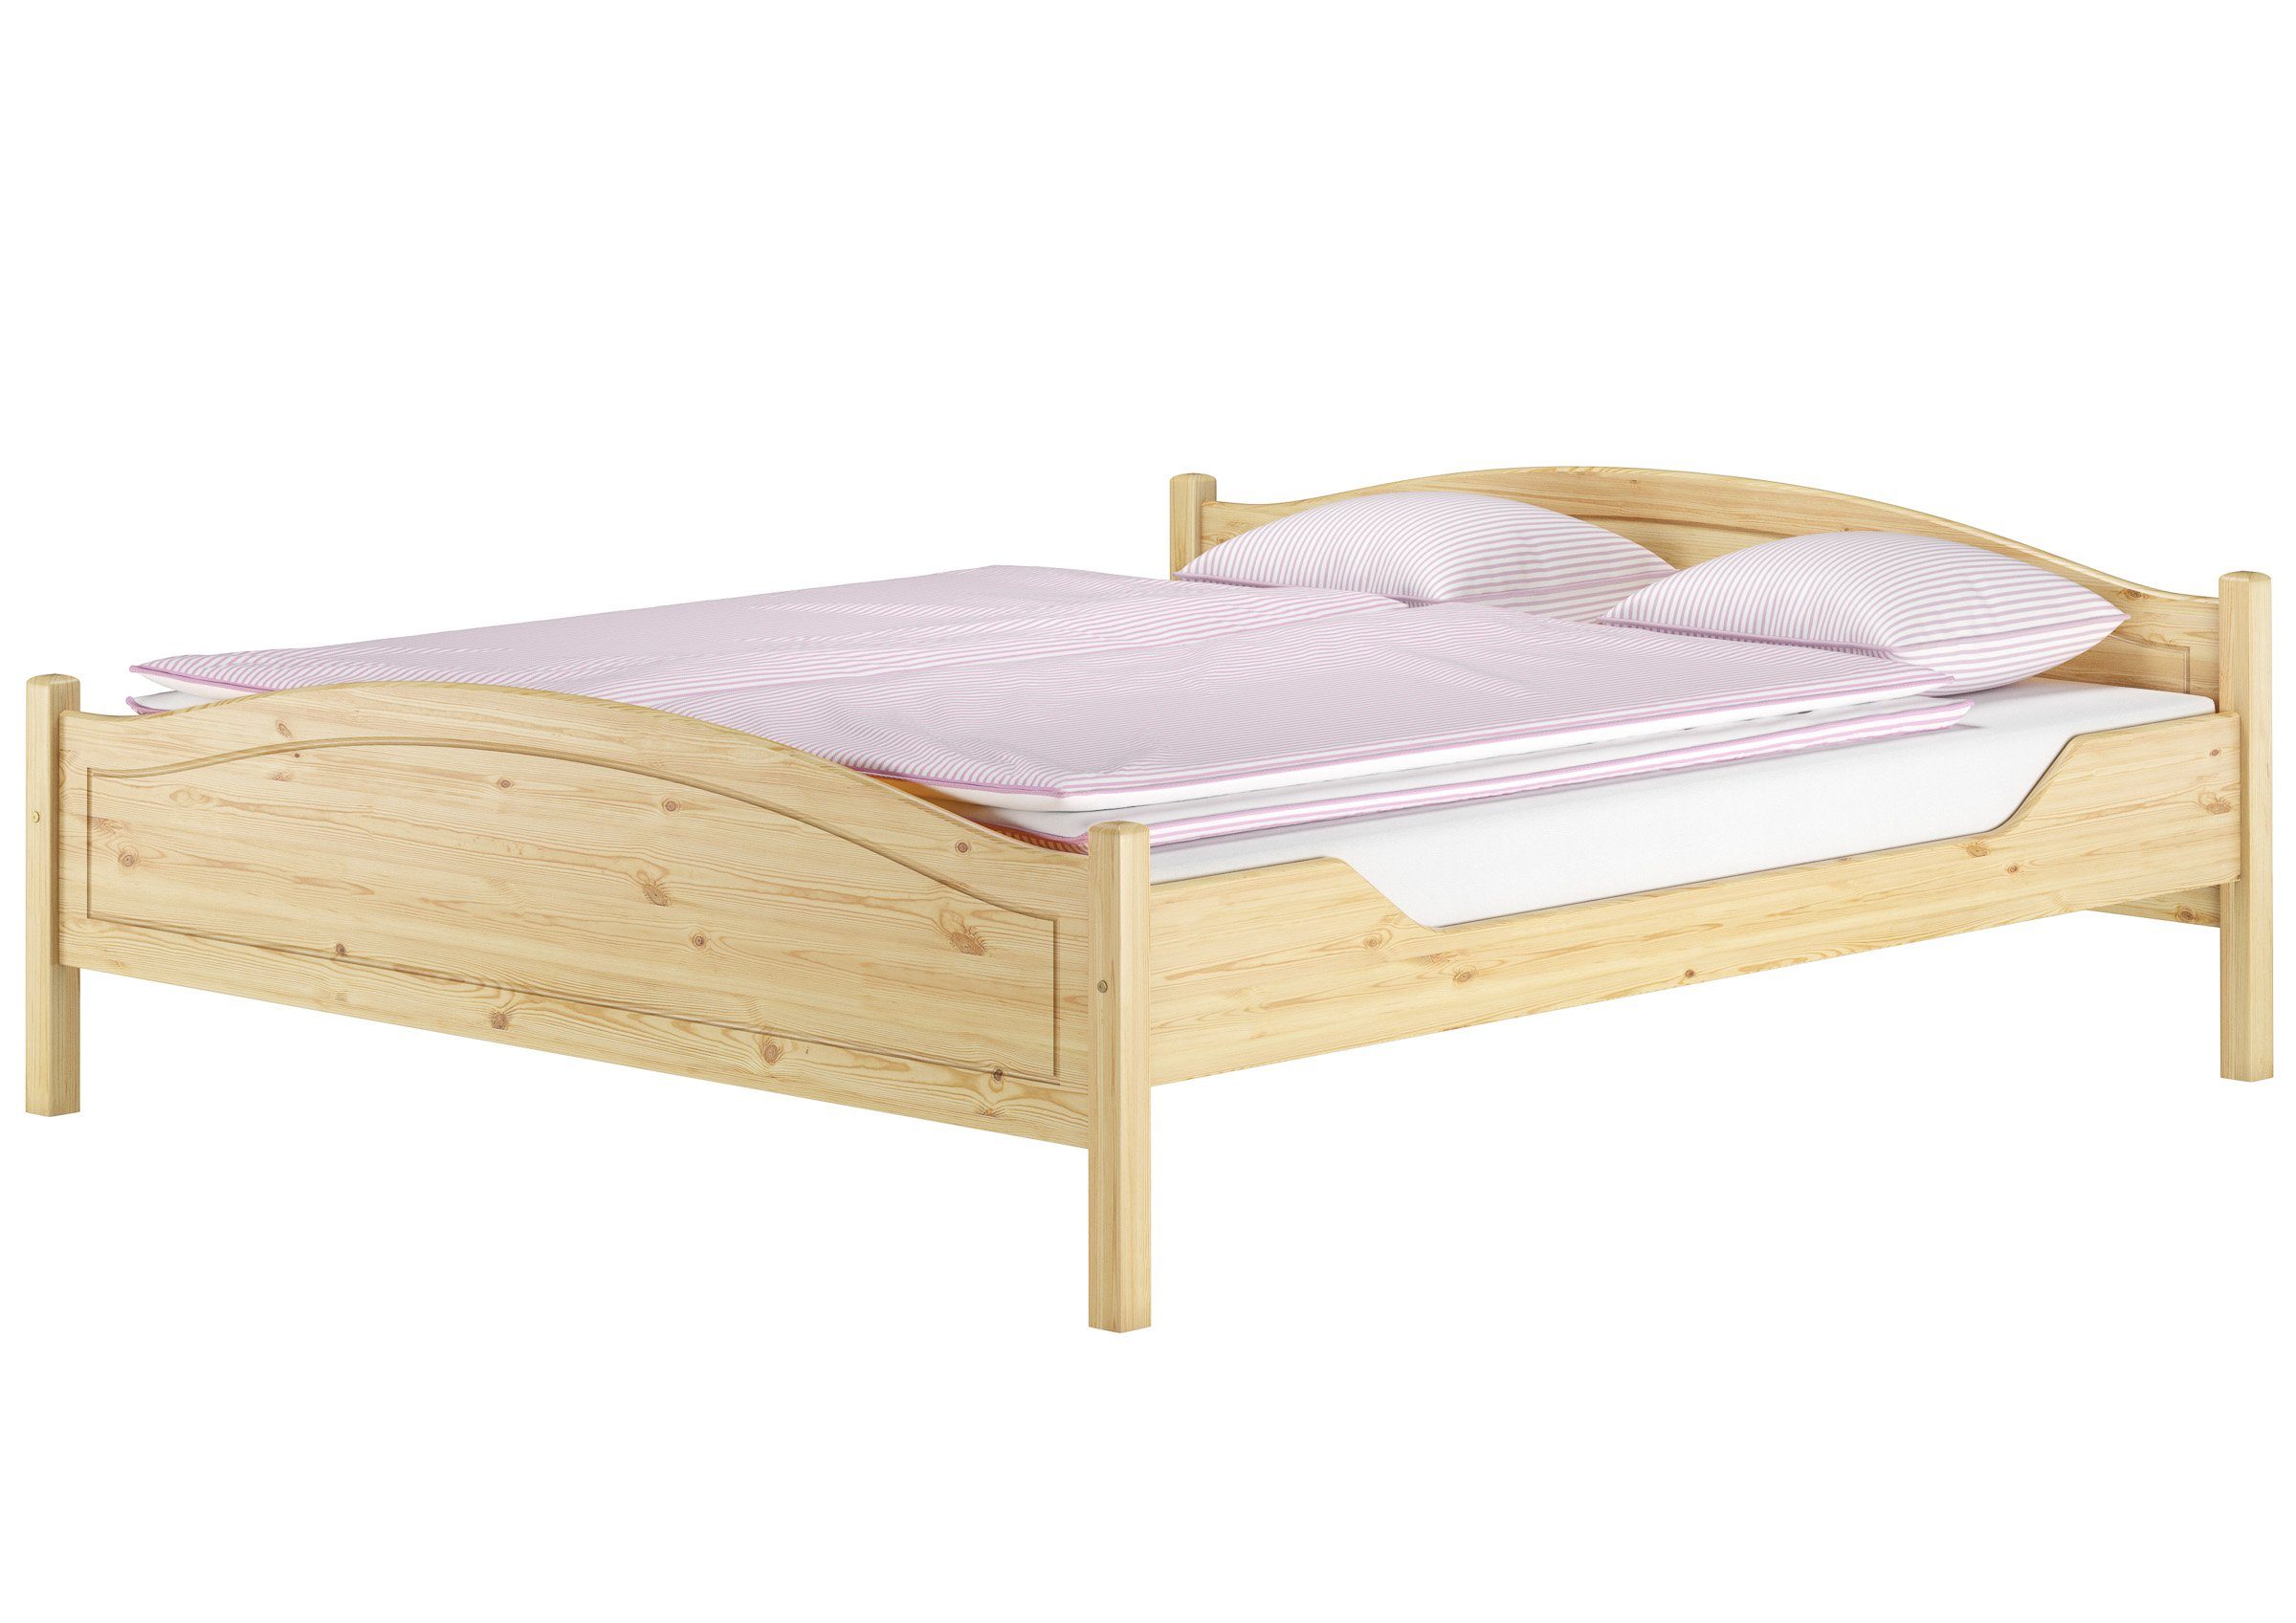 Doppelbett, Klassisches ERST-HOLZ Kiefer Bett Holzbett lackiert Kieferfarblos massiv 180x200